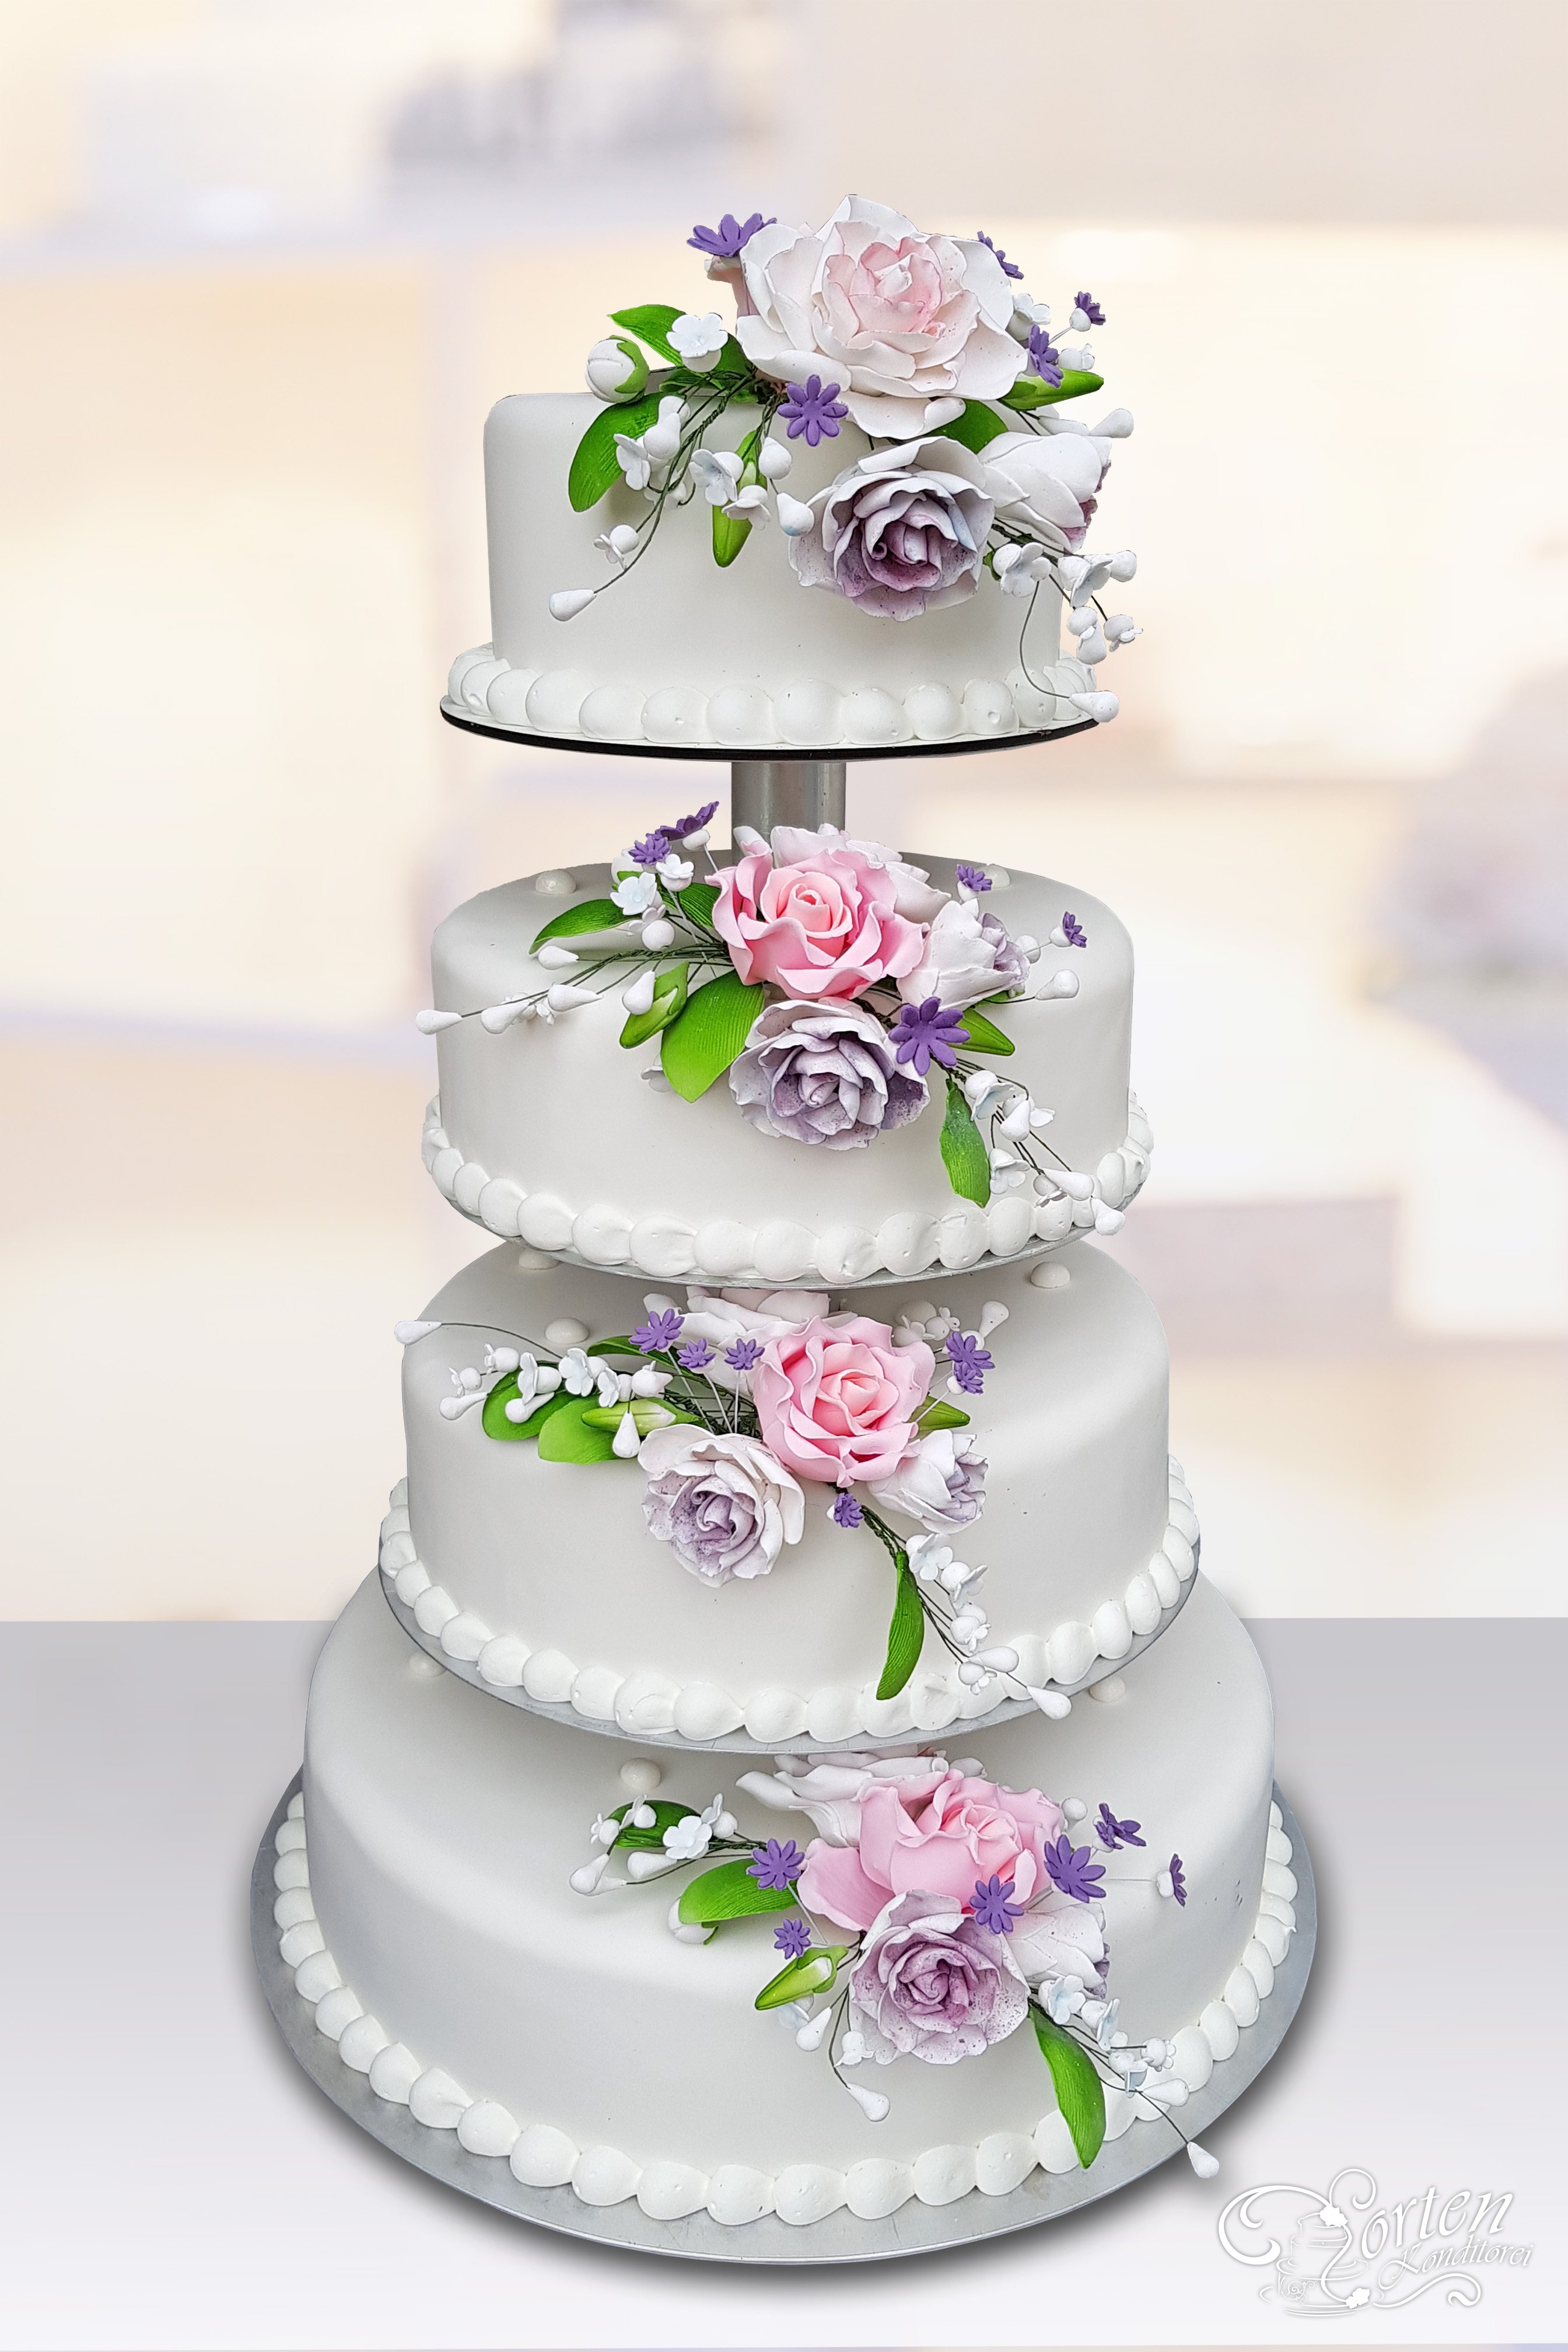 Klassische Hochzeitstorte in violett und rosa-Ton